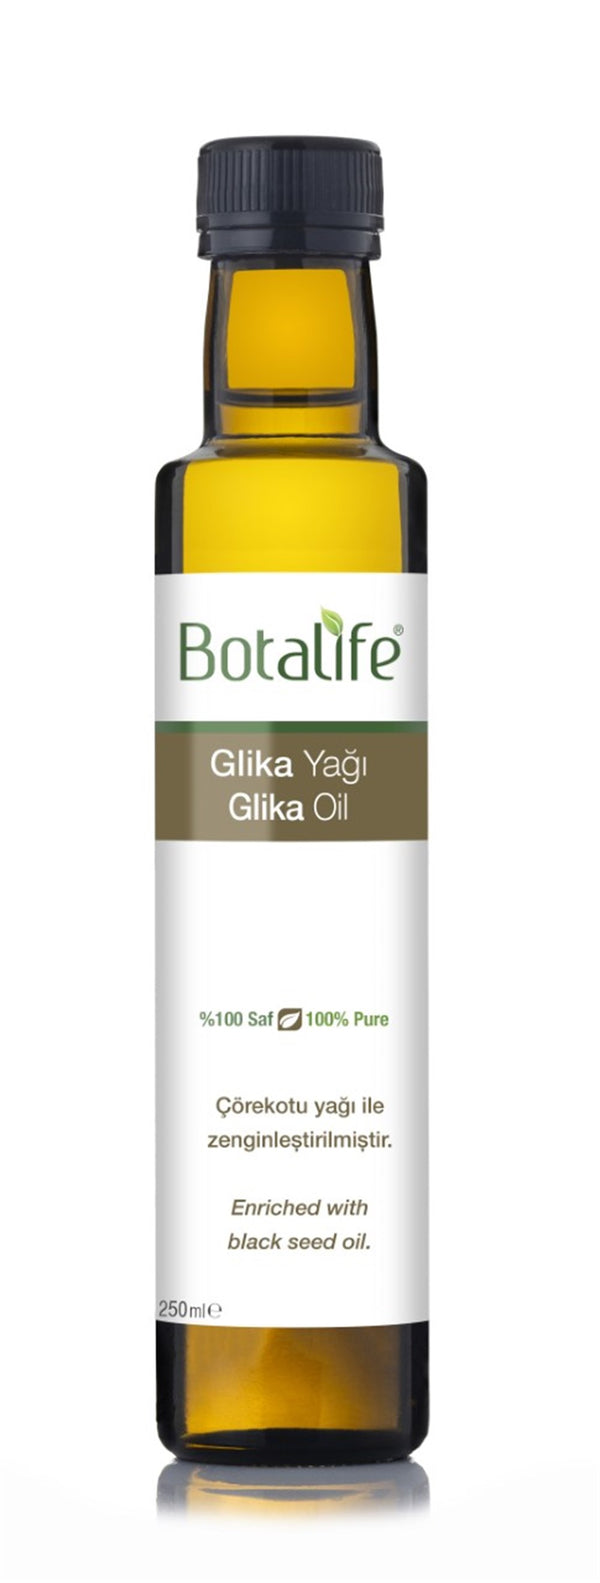 Glika Yağı 250ml - Botalife Shop